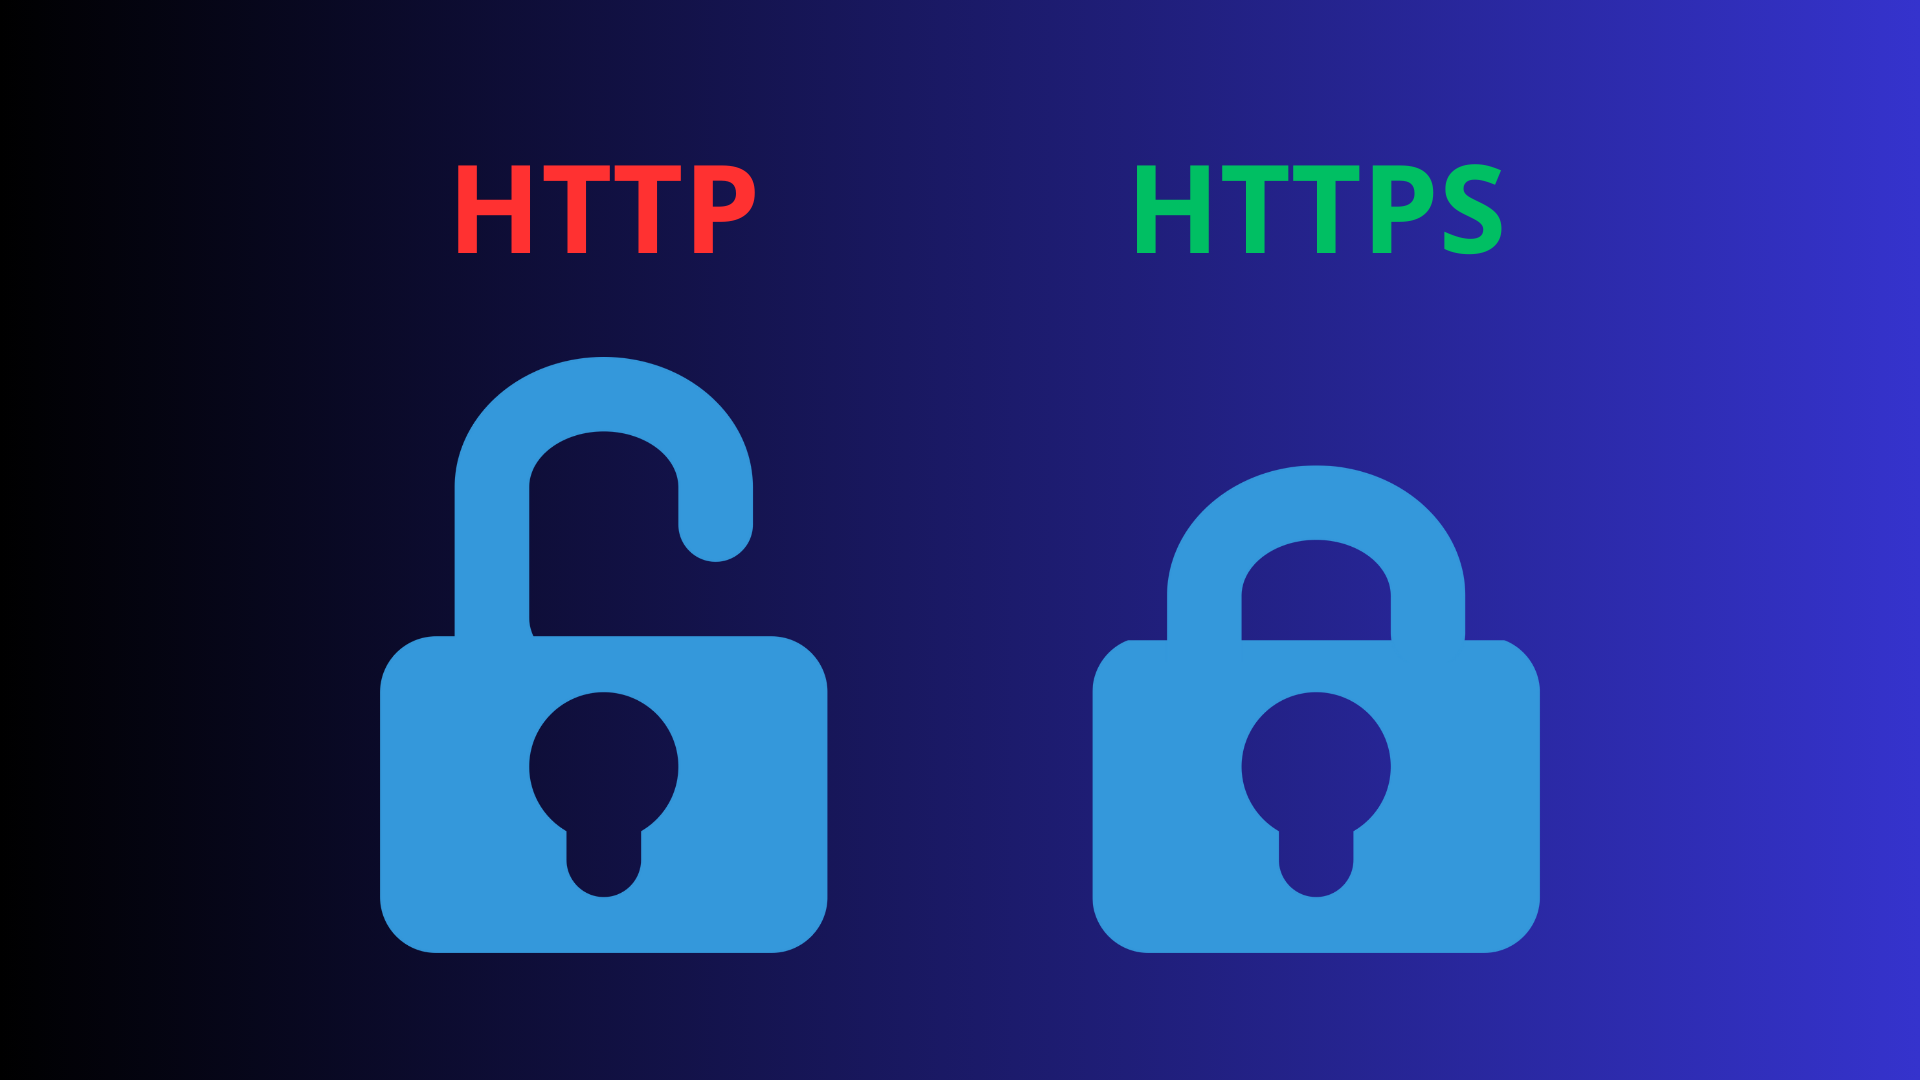 ما هو الفرق بين HTTP و HTTPS ؟